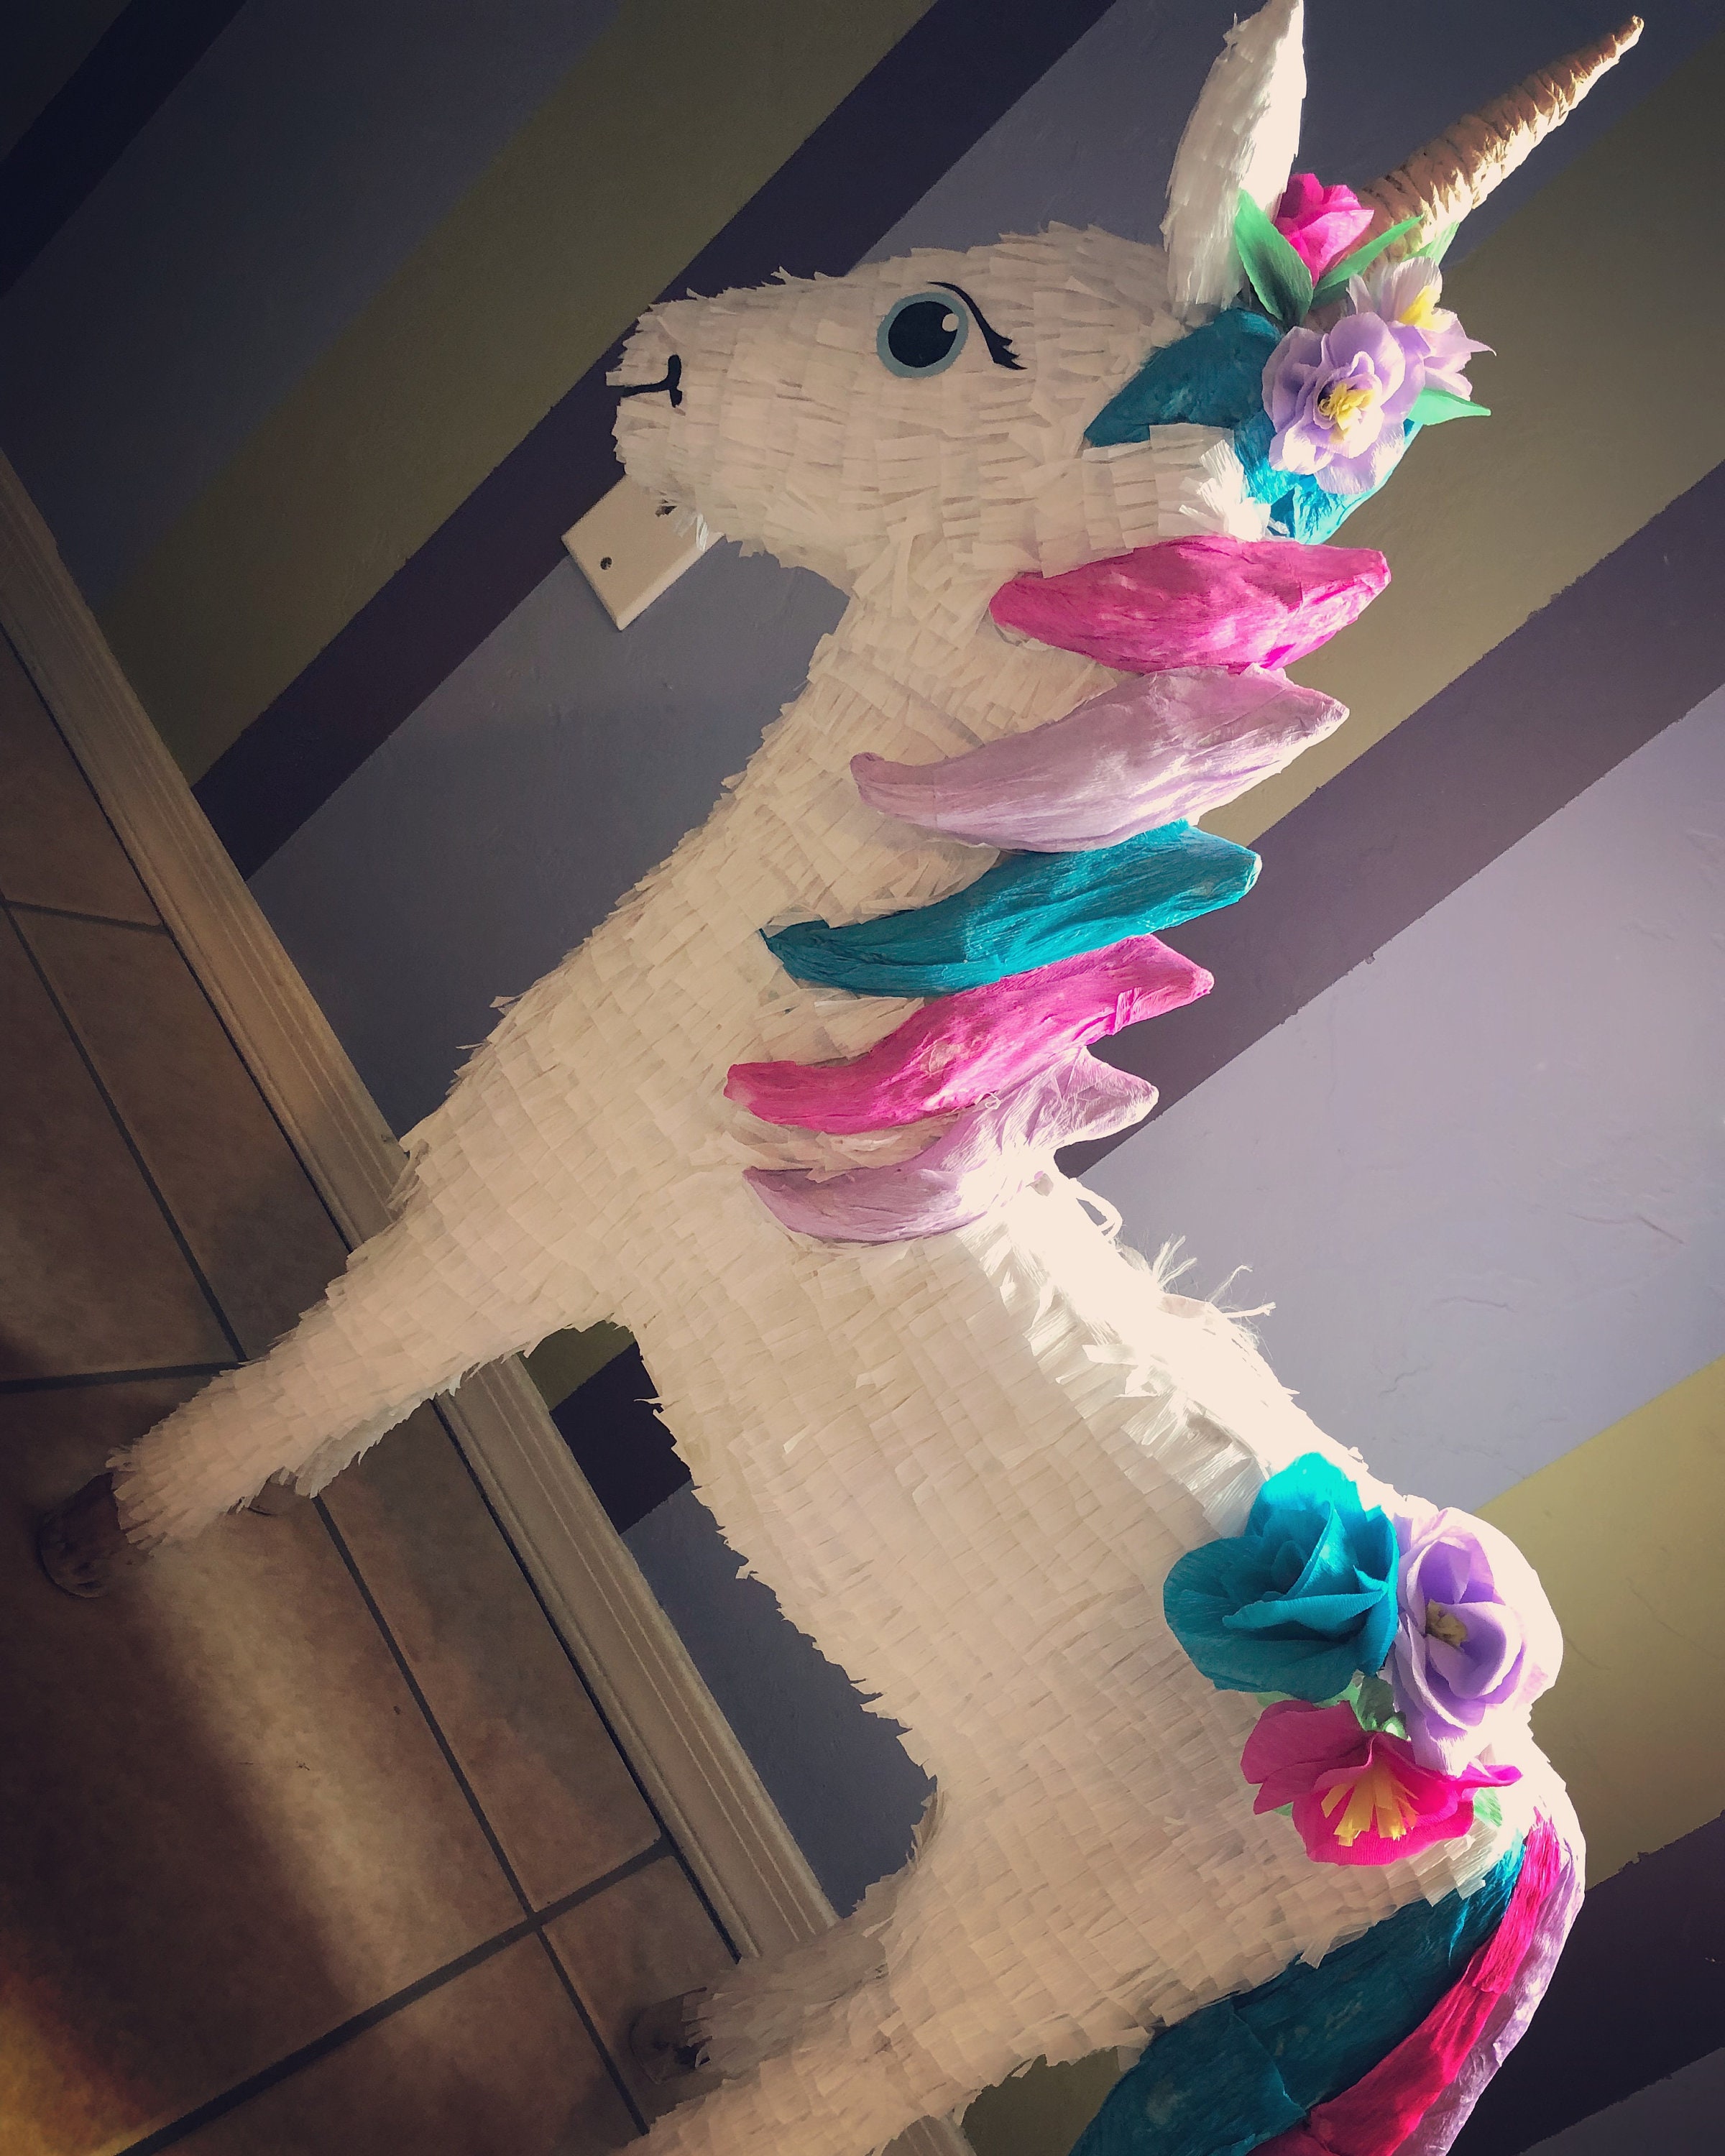 Piñata De Unicornio, Piñata De Número De Unicornio, Fiesta De Unicornio,  Ideas De Fiesta De Unicornio, Piñata De Unicornio Personalizada -   Ireland